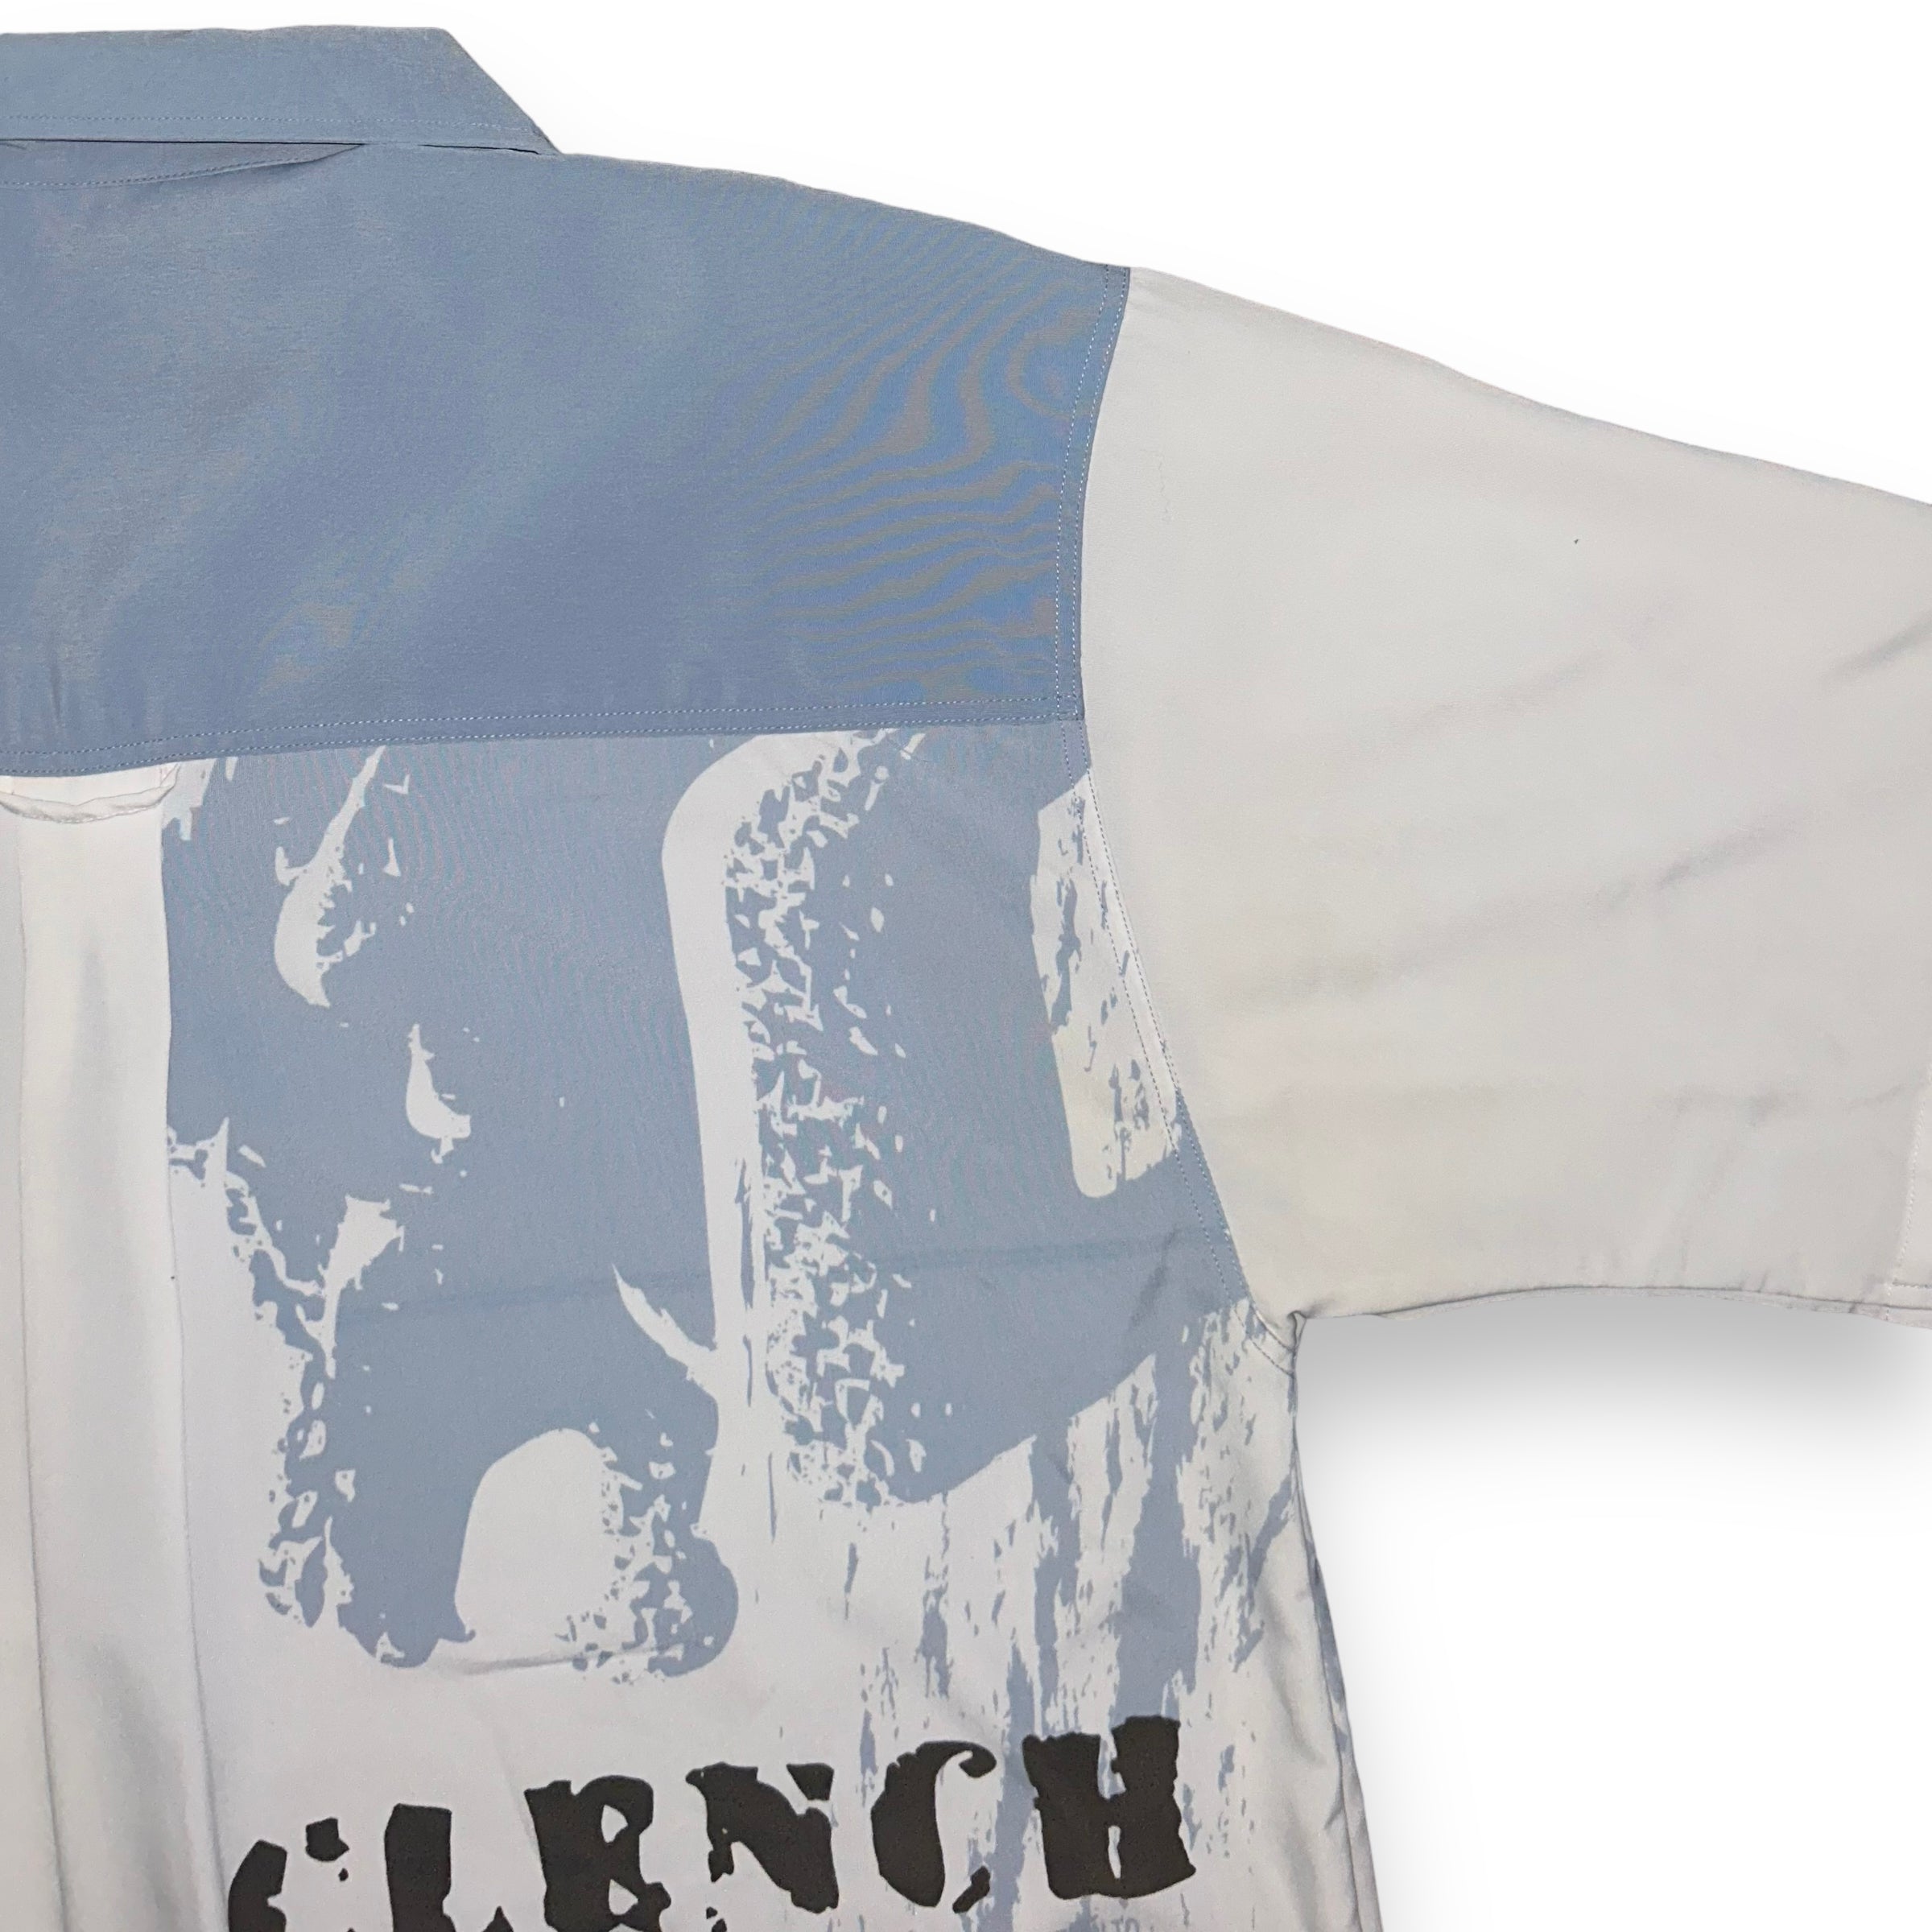 Camicia Clench (XL)